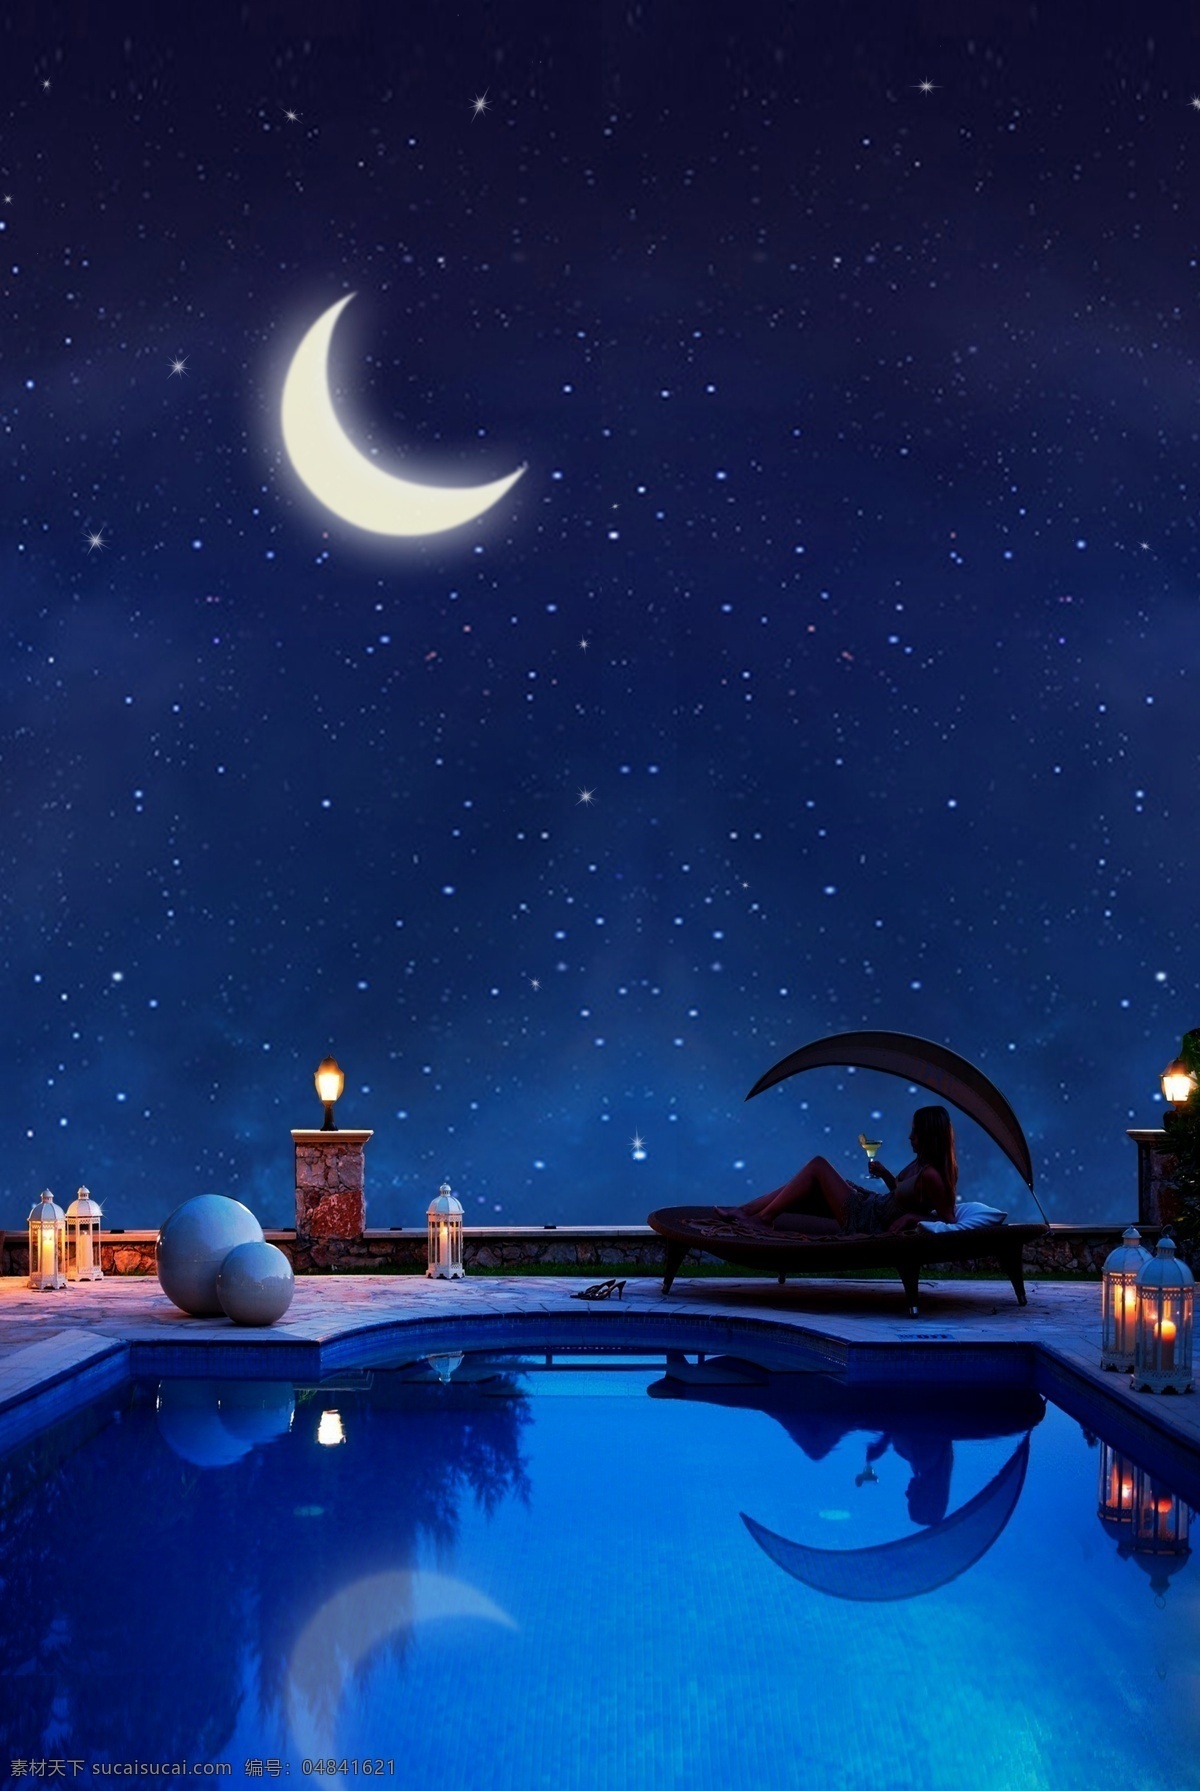 蓝色 手绘 仲夏 夜游 泳池 梦幻 夜色 背景 仲夏之夜 游泳池 夜色背景 夜空 月亮 唯美